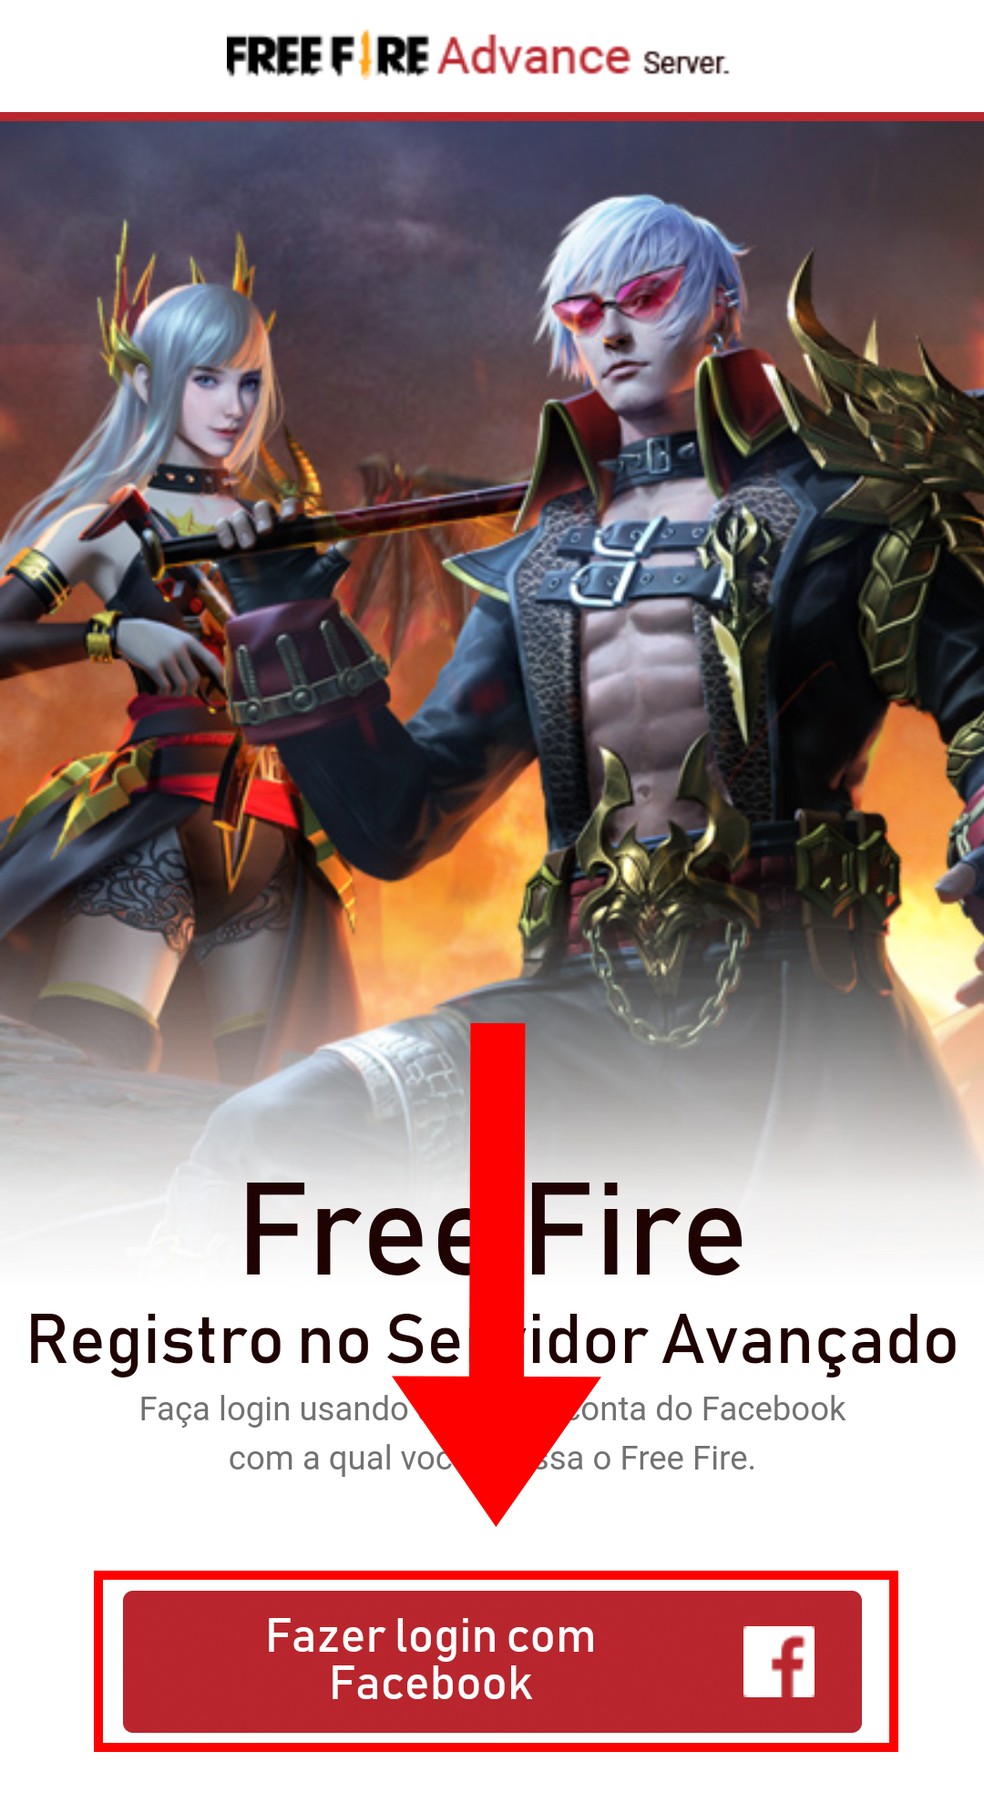 Free Fire: Servidor Avançado de novembro está aberto; veja como